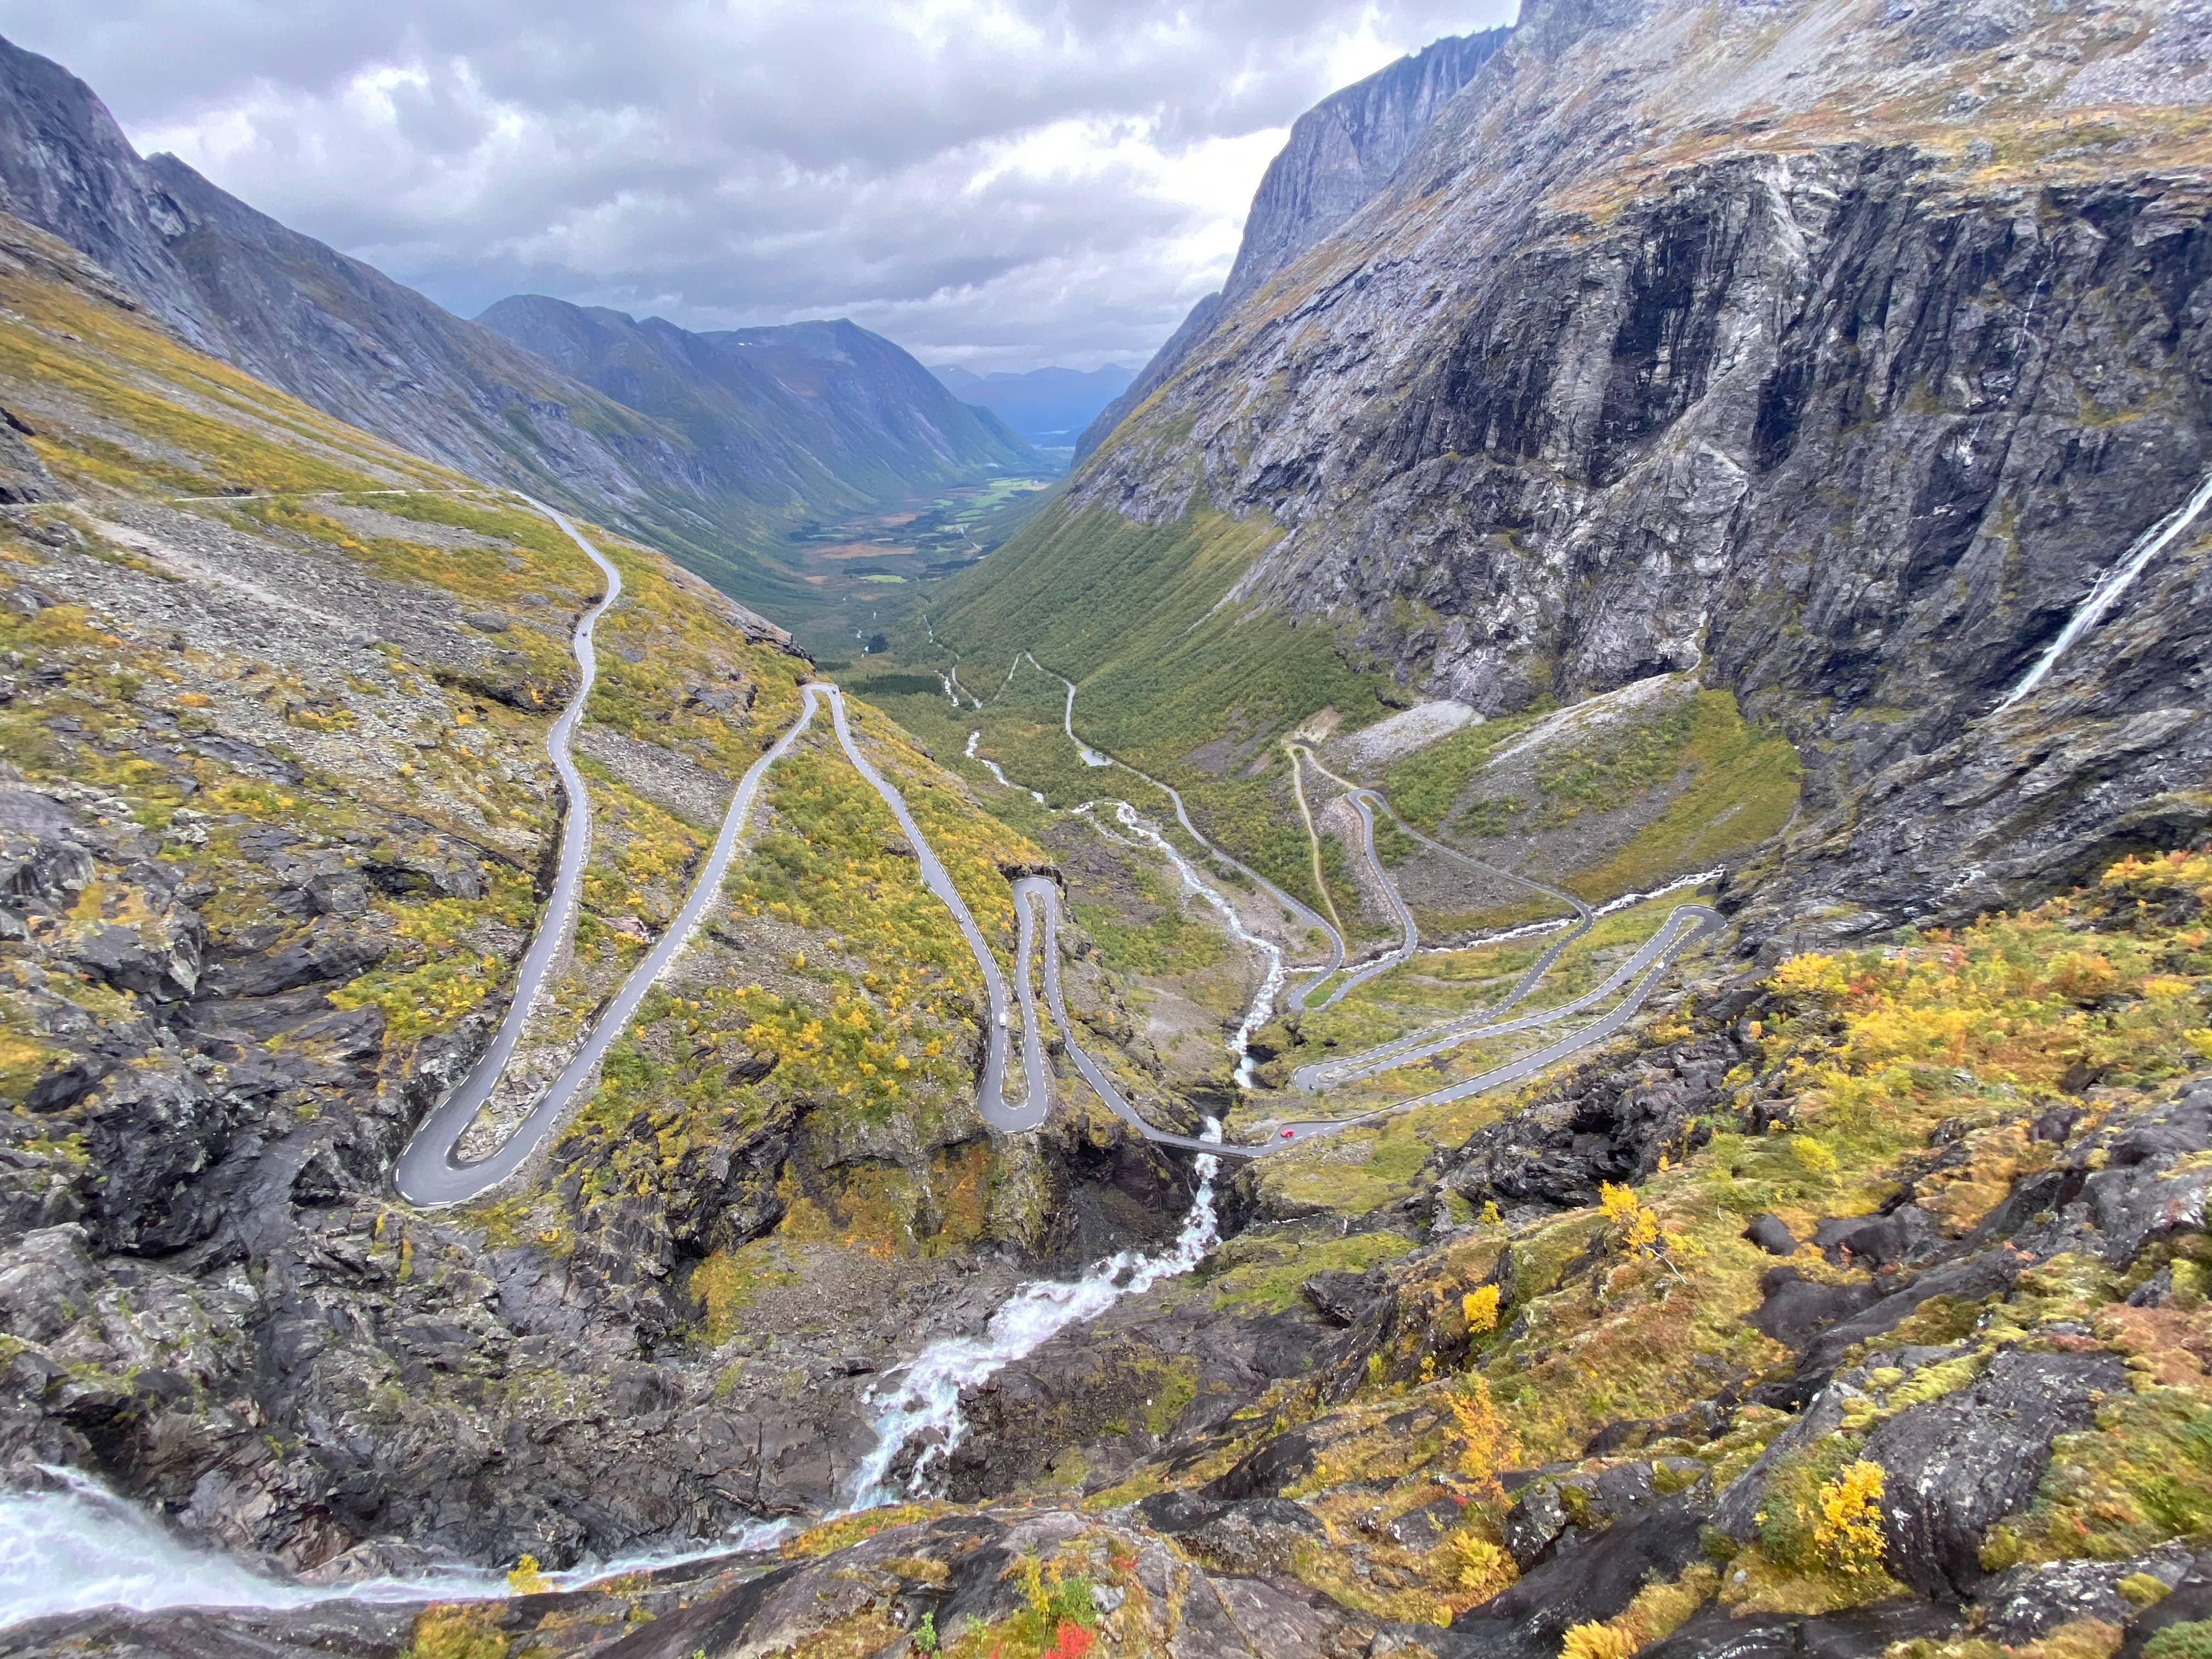 Picture of the Trollstigen in Norway